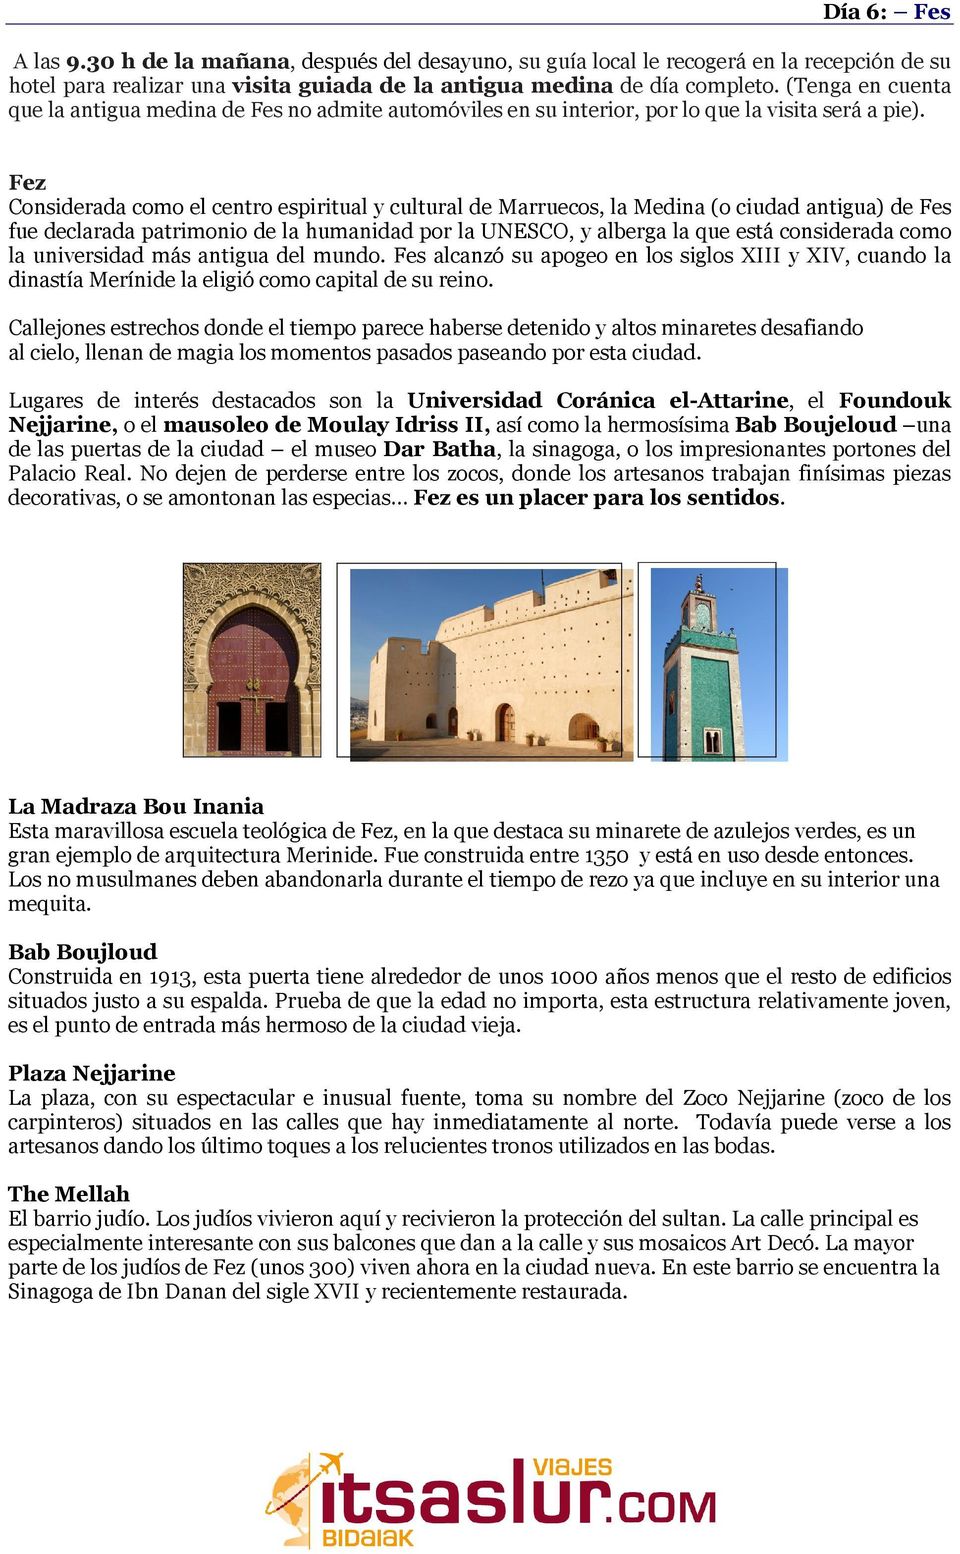 Fez Considerada como el centro espiritual y cultural de Marruecos, la Medina (o ciudad antigua) de Fes fue declarada patrimonio de la humanidad por la UNESCO, y alberga la que está considerada como